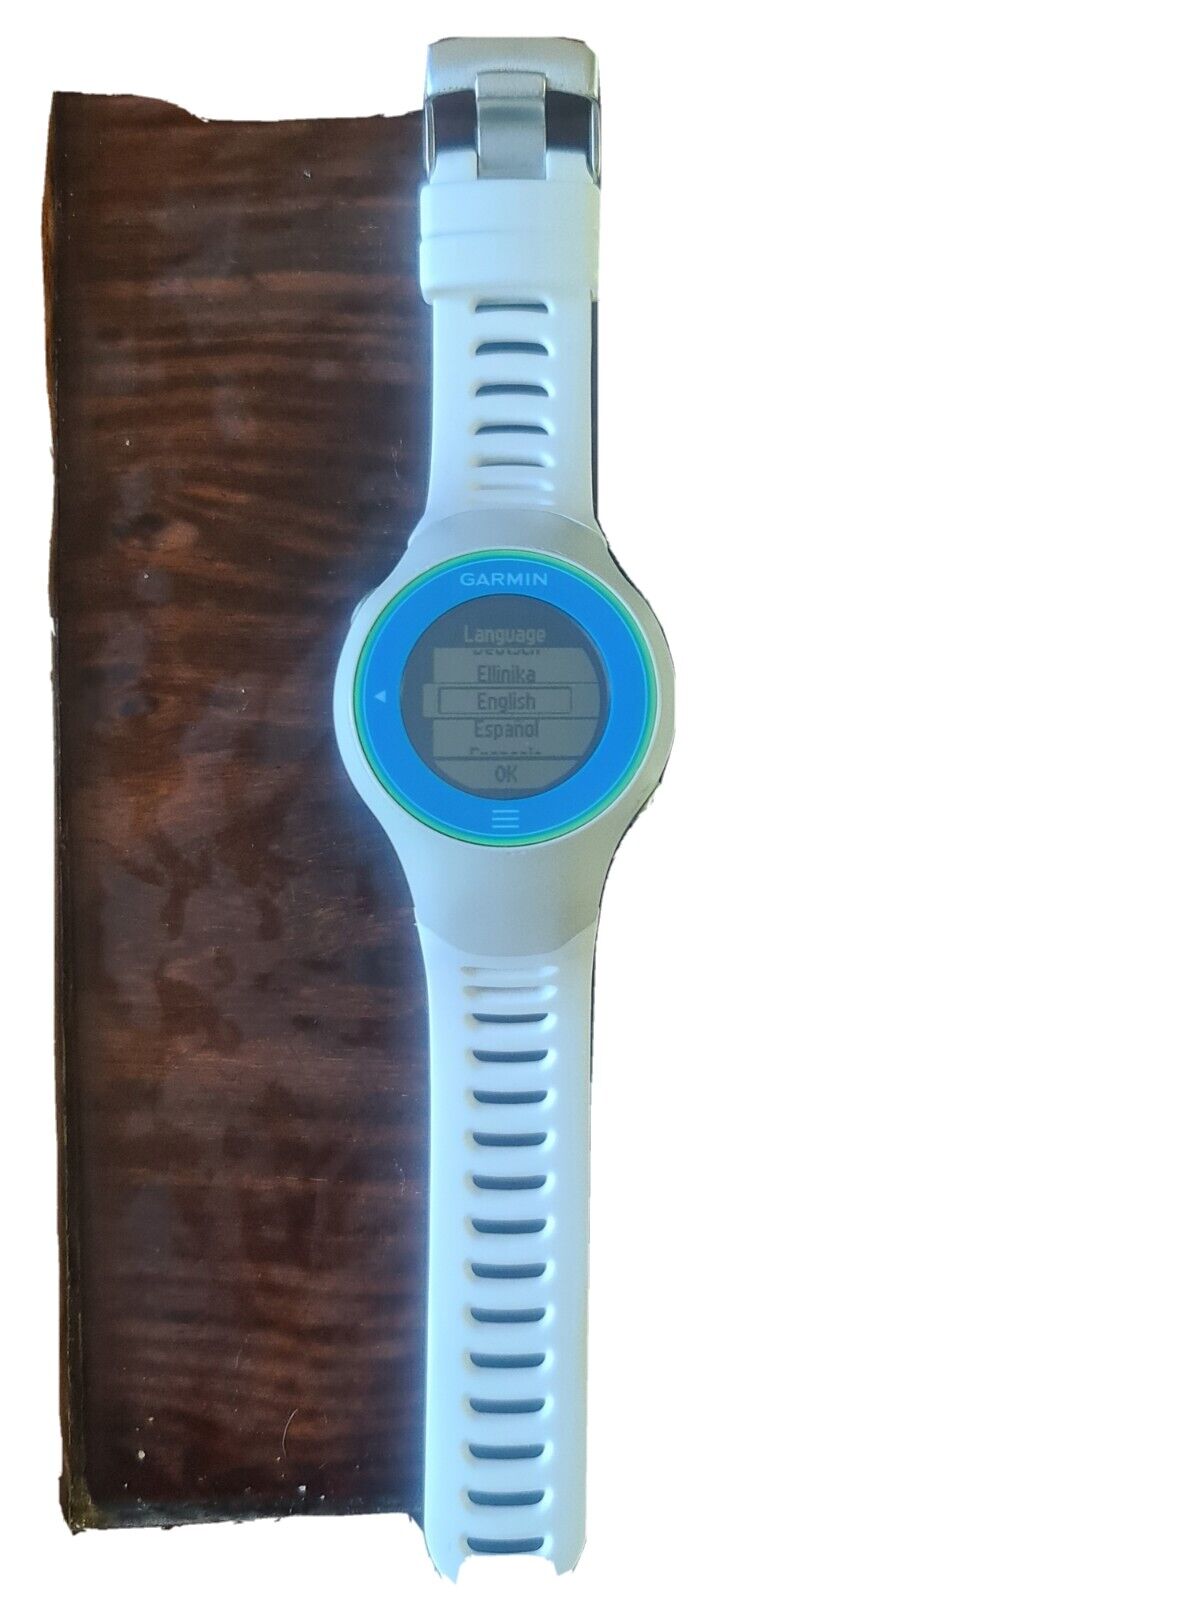 Fortrolig Kollegium produktion Garmin Forerunner 610 Watch | eBay